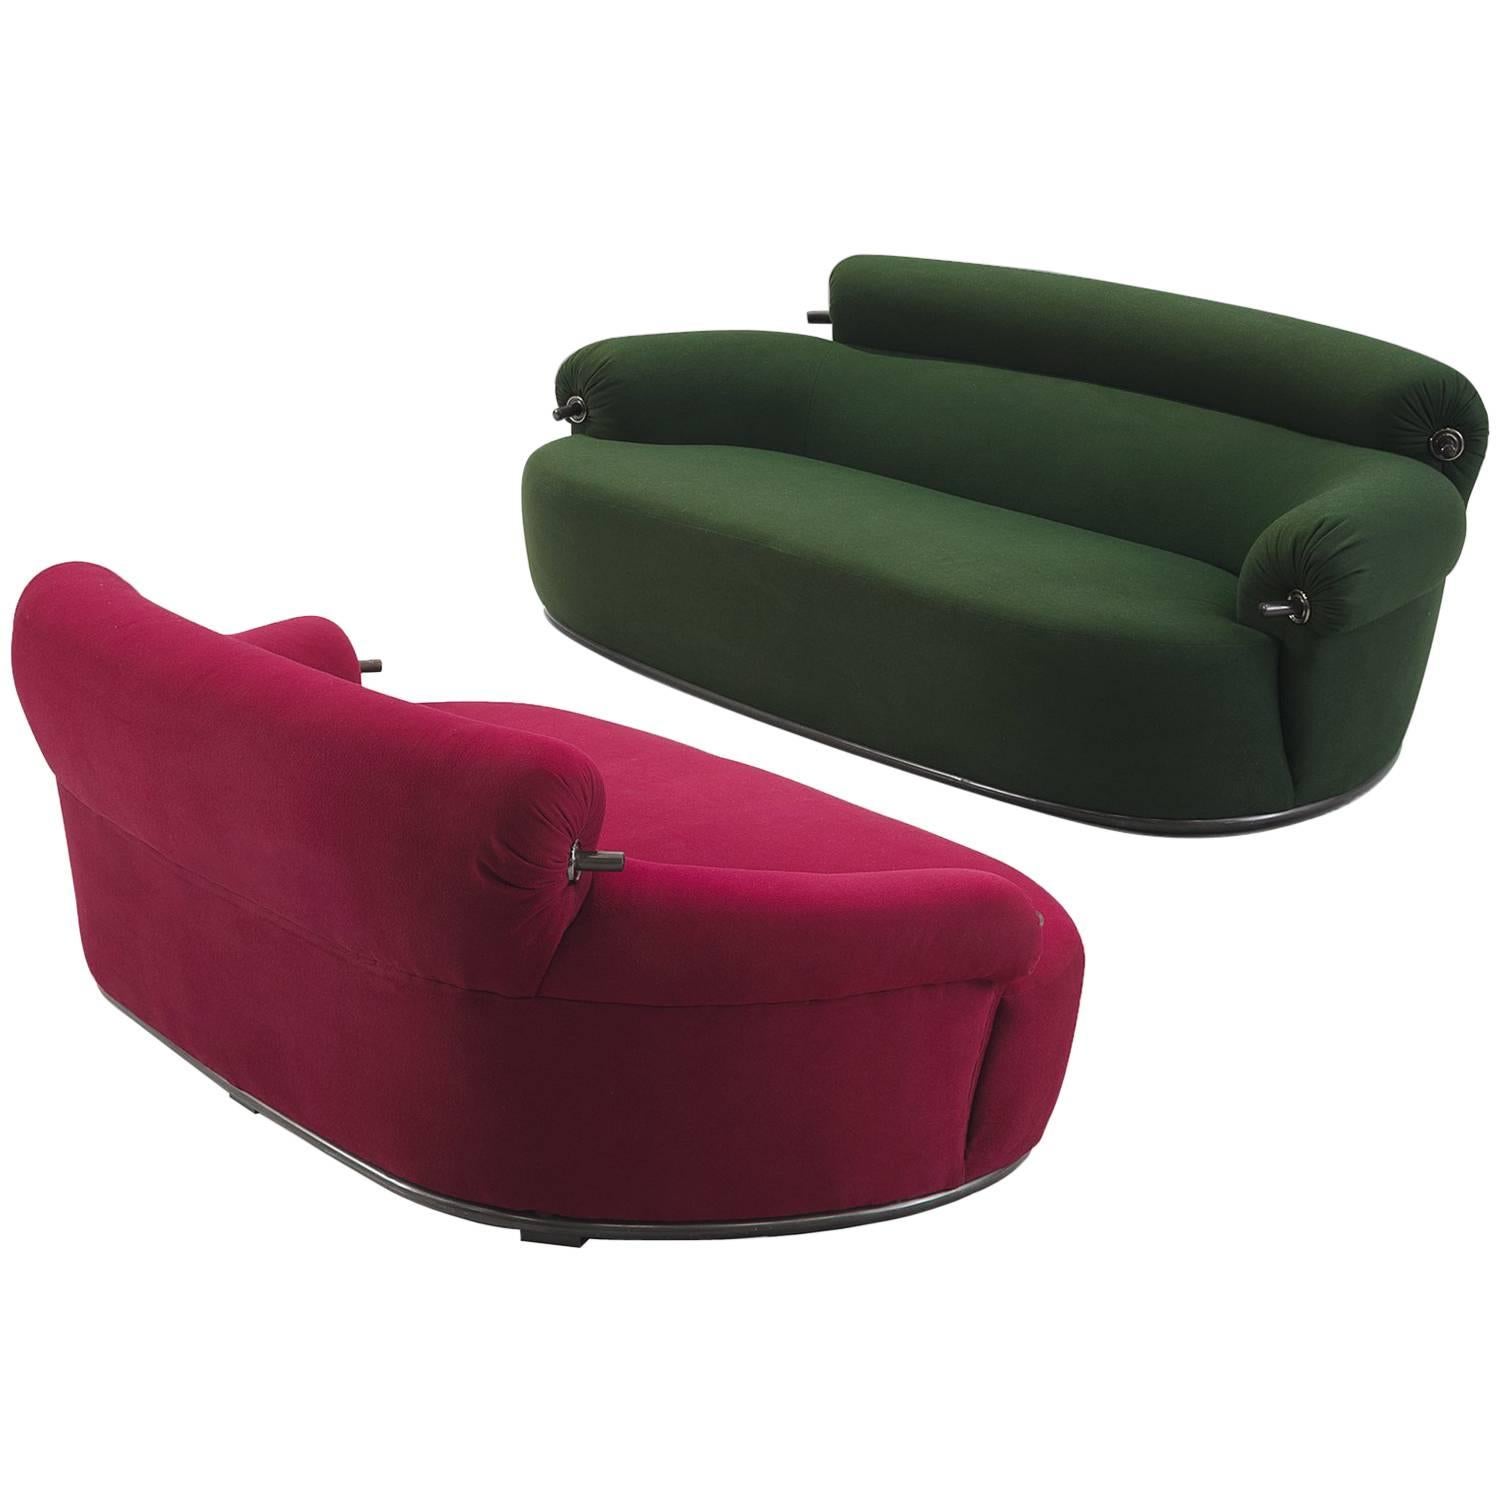 Set of Two 'Toro' Sofas by Luige Caccia Dominioni